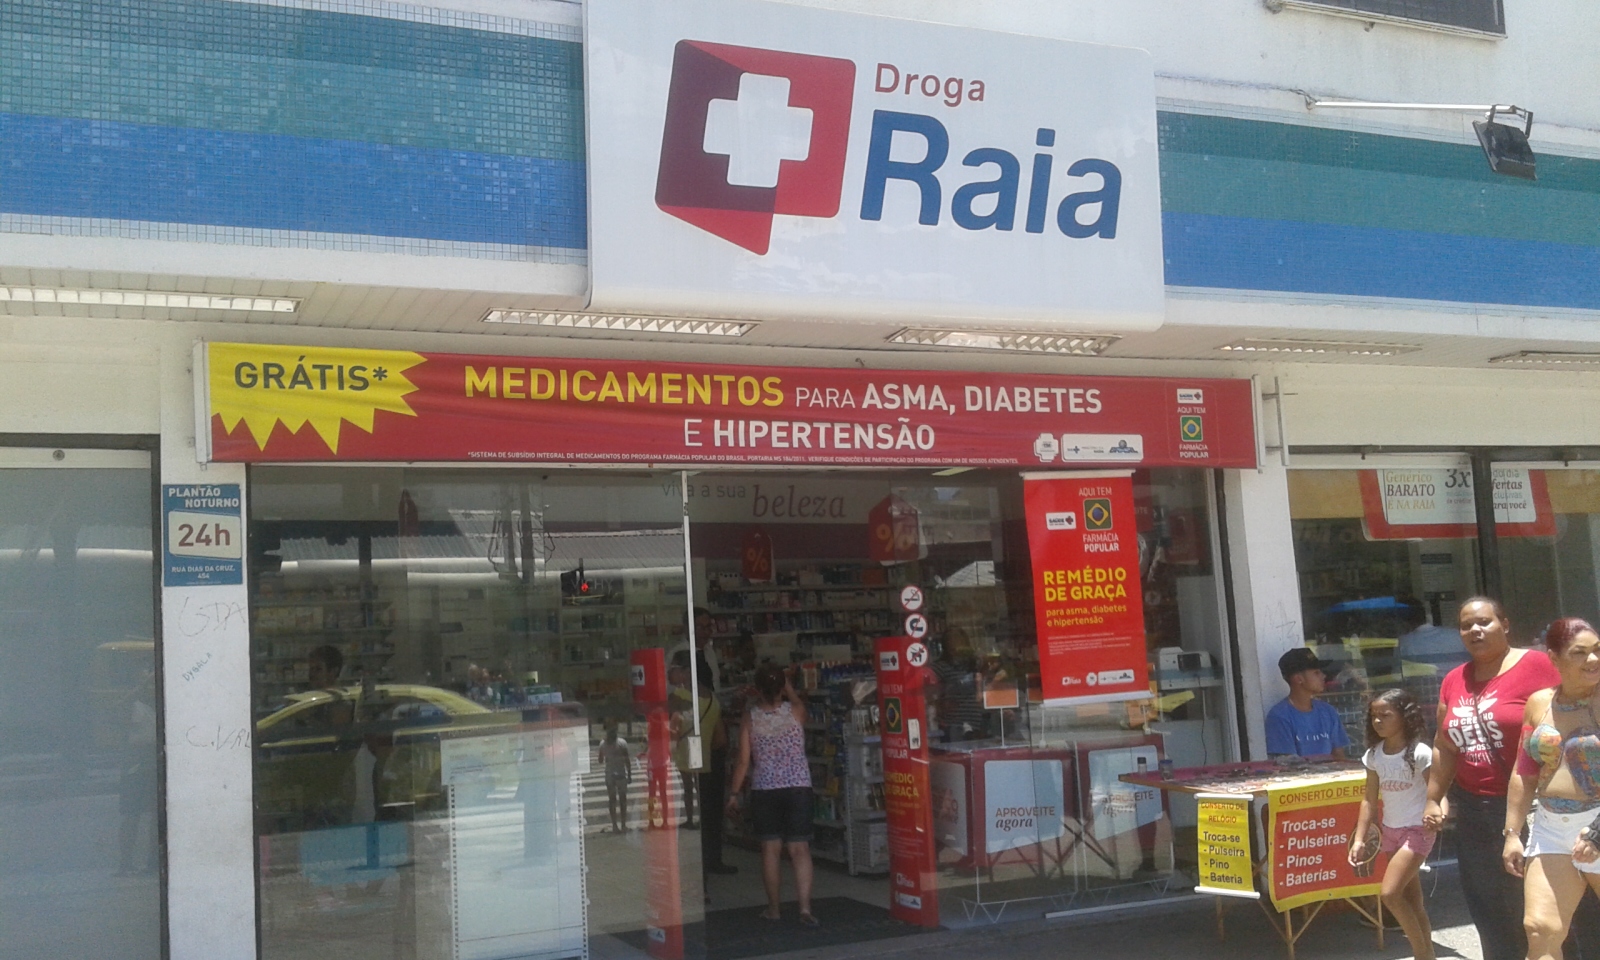 DROGA RAIA - Av. Presidente Kennedy, 2490, Praia Grande - SP, Brazil -  Pharmacy - Phone Number - Yelp